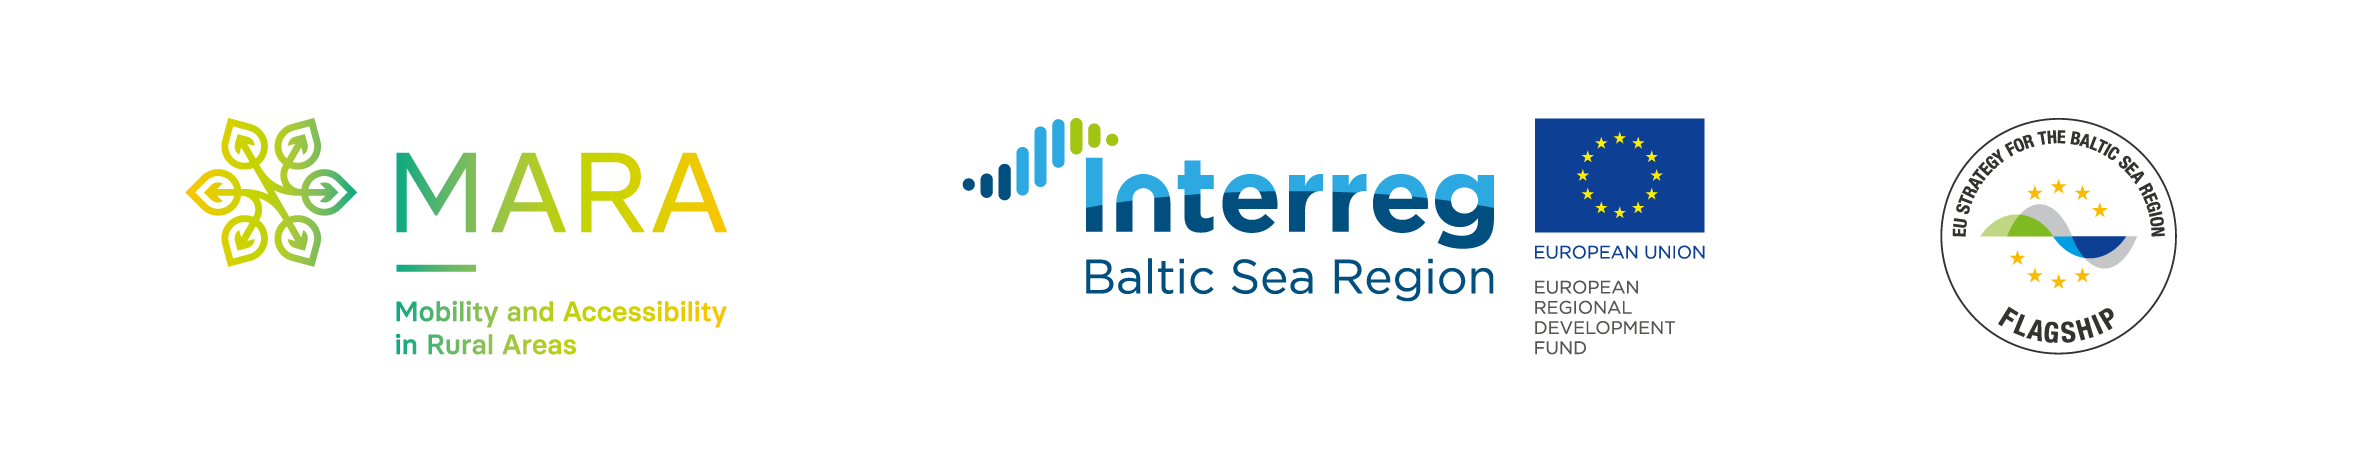 logotypy projektu MARA - ikony z nazwą projektu MARA, Programu Interreg Baltic Sea Region 